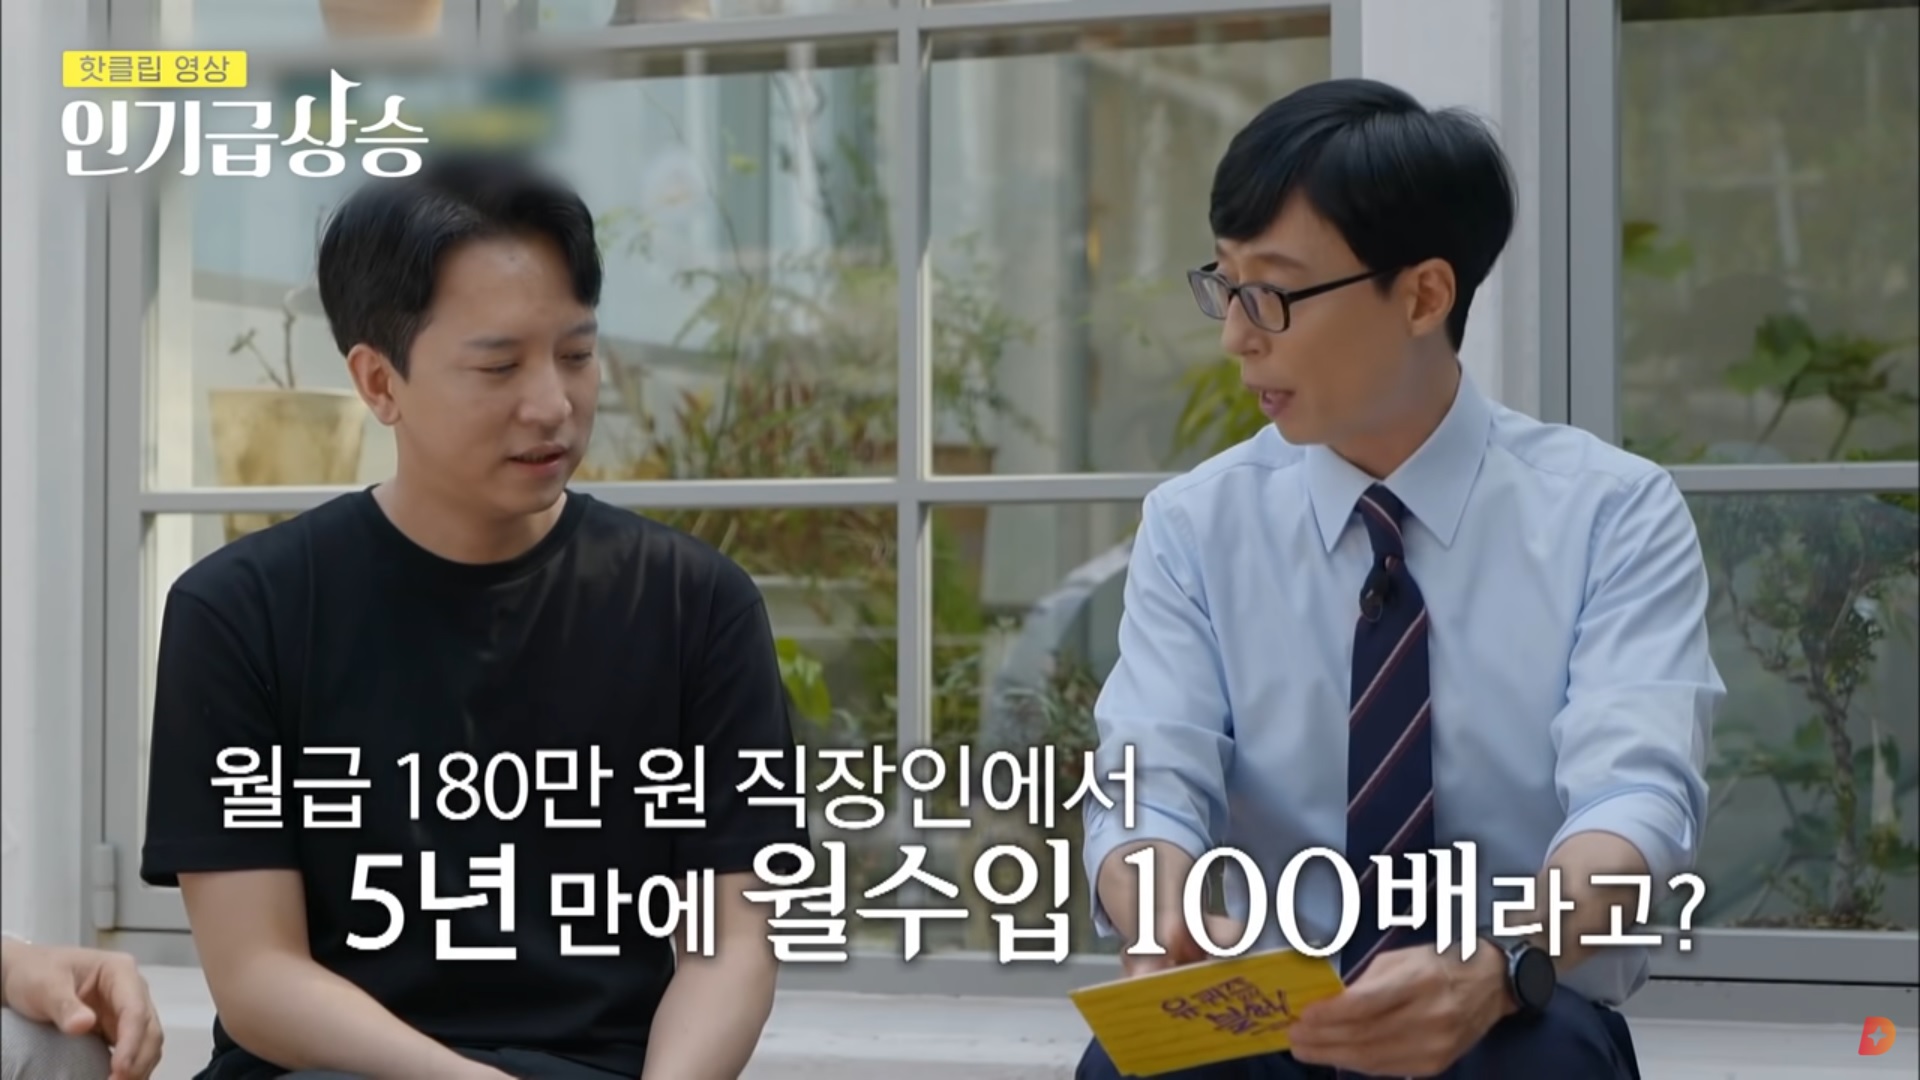 월급 180만원 직장인에서_출처 tvN D ENT 유튜브 화면캡쳐.jpg